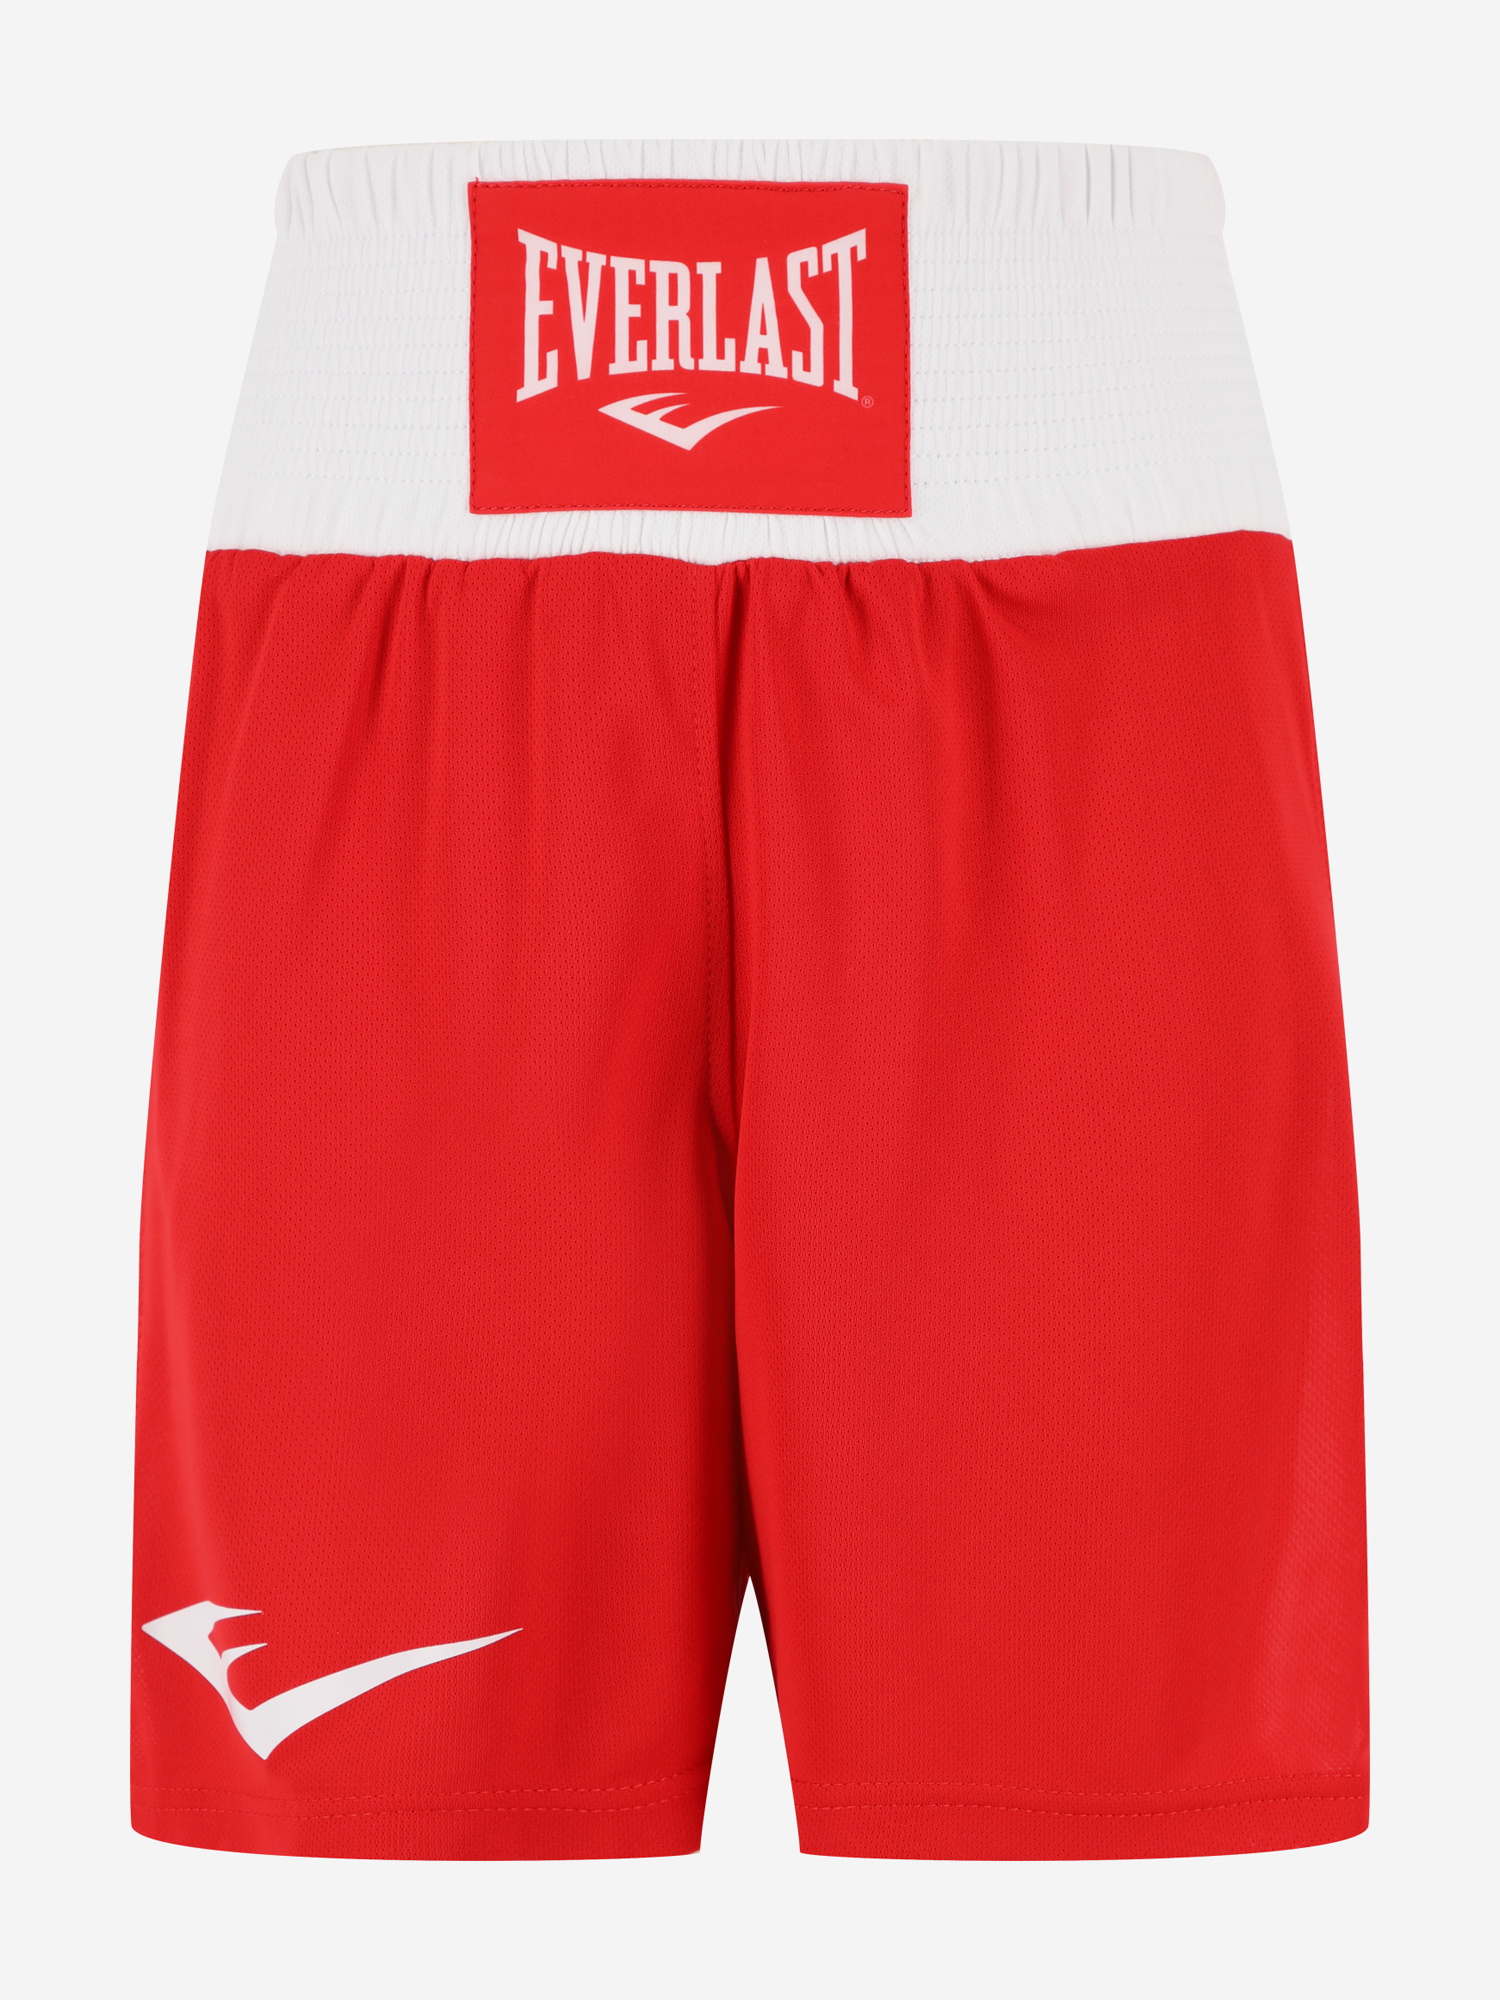 Шорты для бокса детские Everlast Elite, Красный боксерки мужские everlast competition boxing